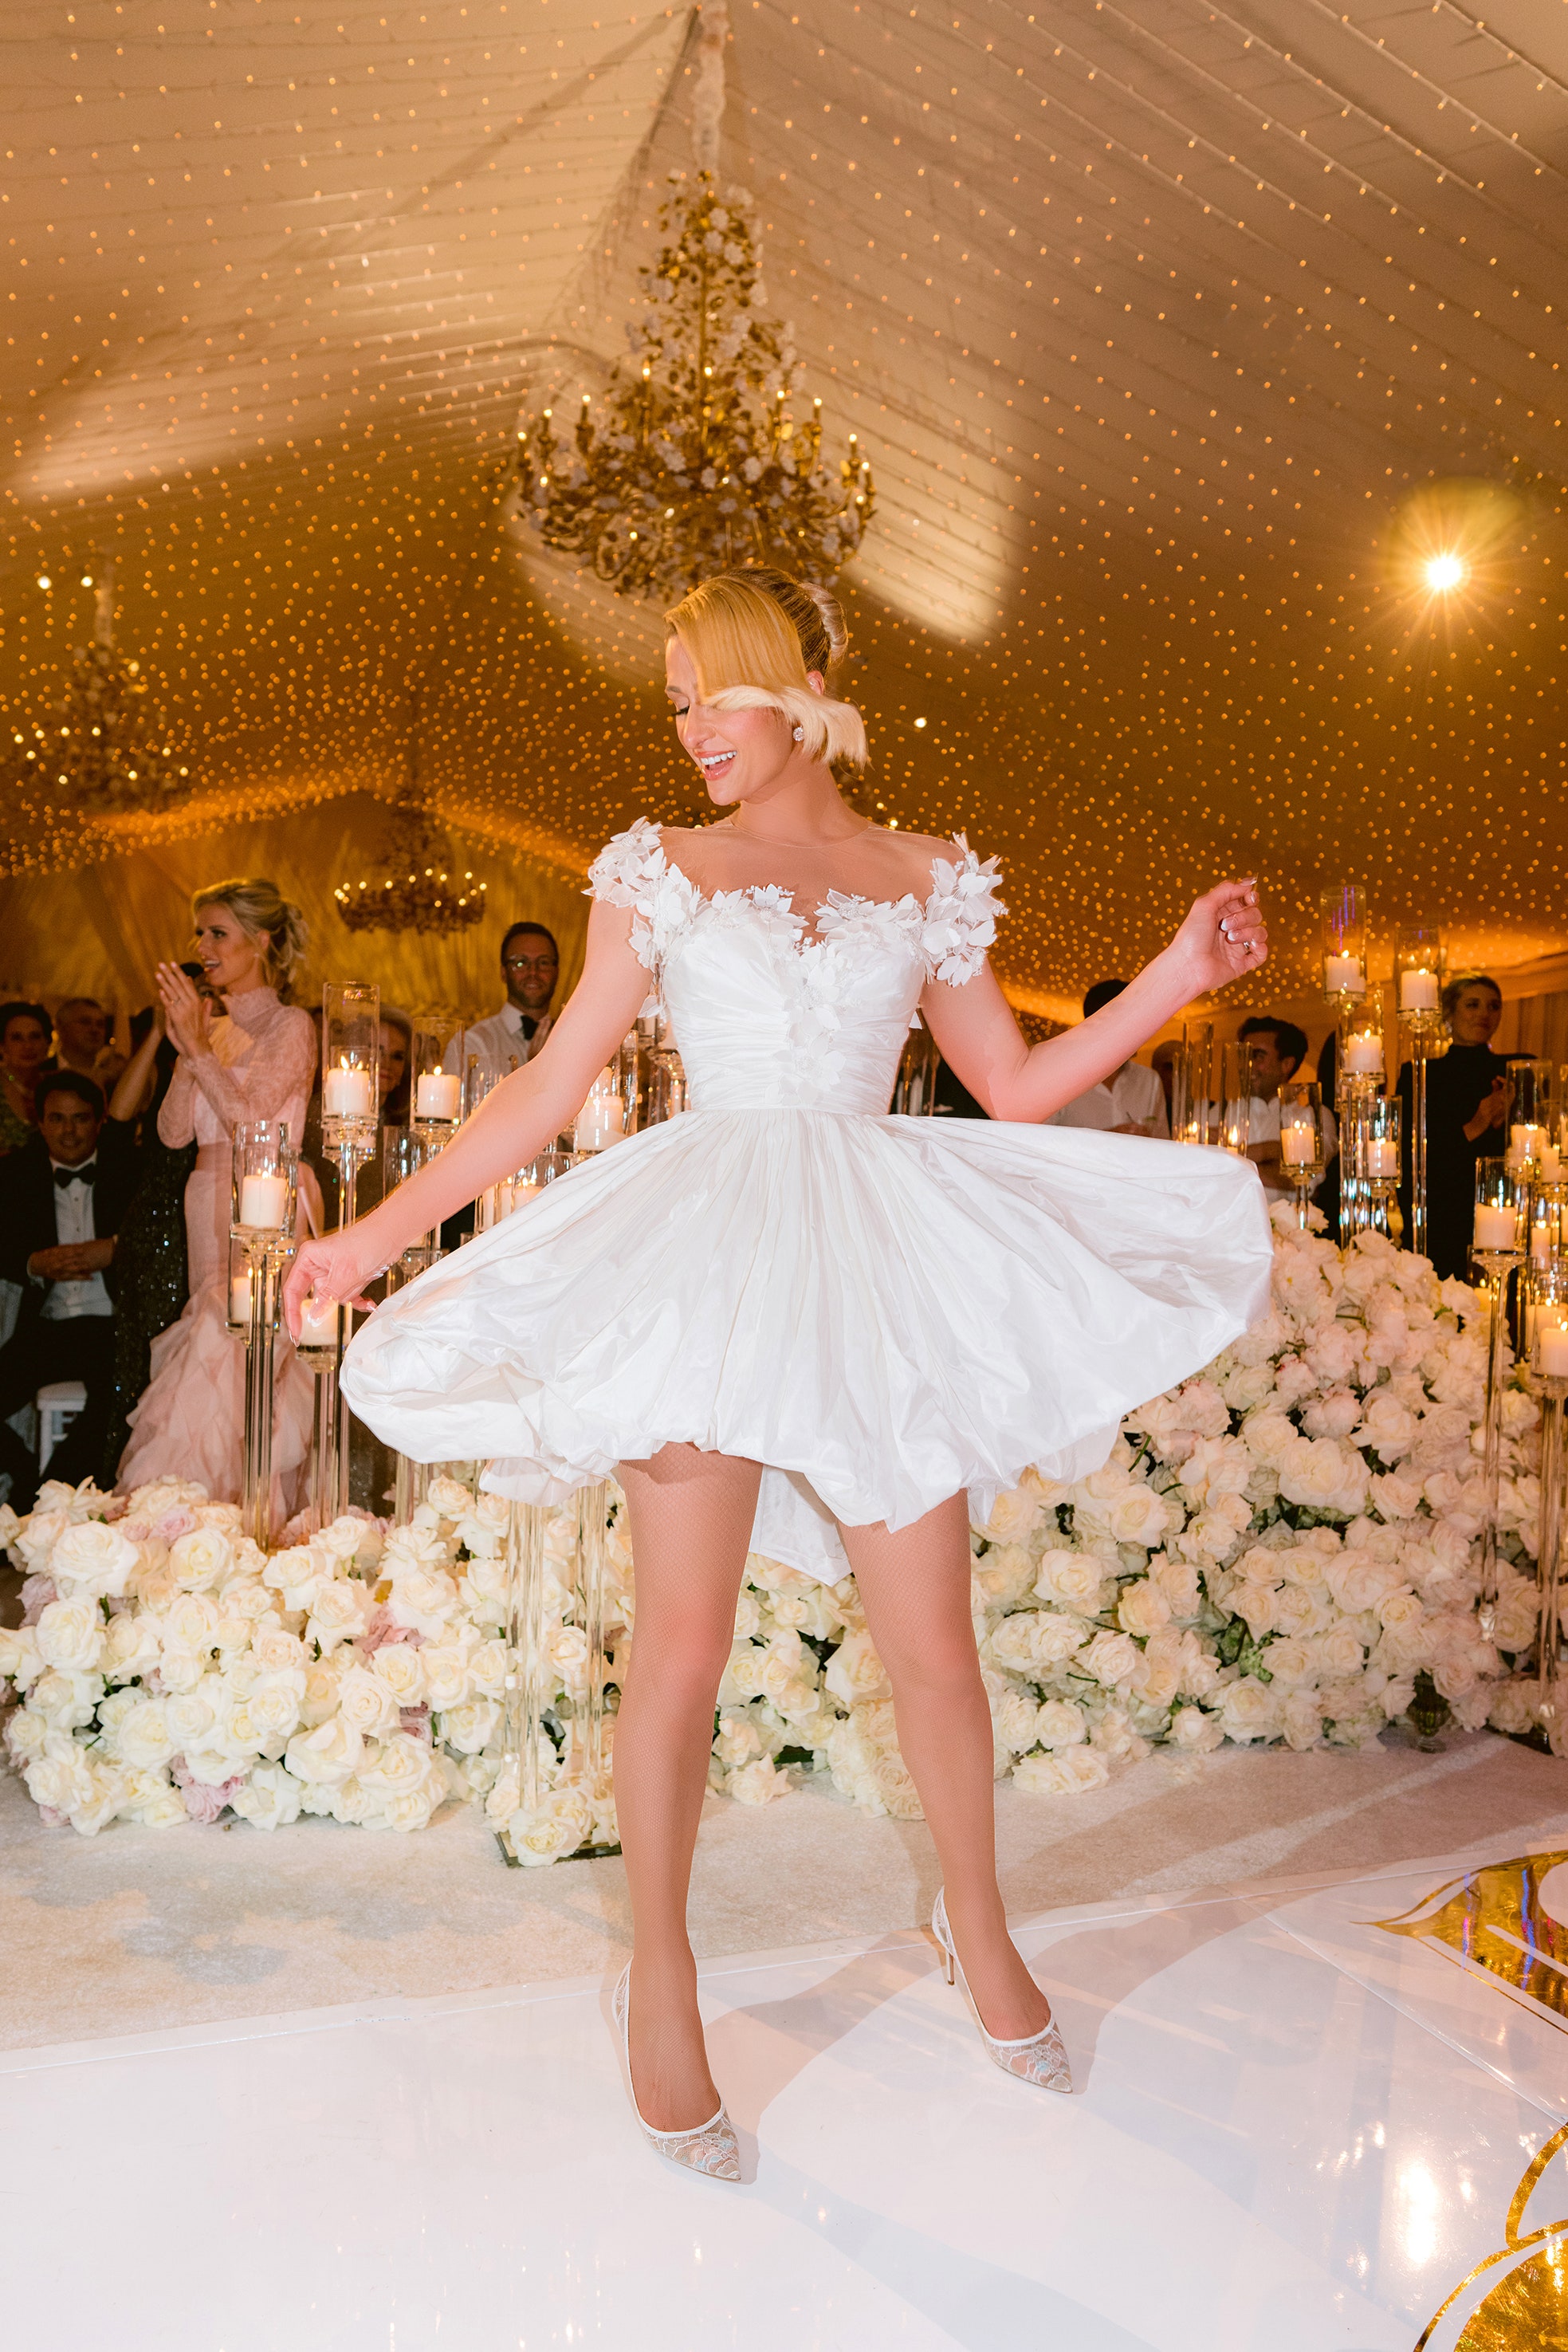 Choáng ngợp trước vẻ xa xỉ trong hôn lễ của Paris Hilton: Đẳng cấp công chúa hàng thật giá thật là đây! - ảnh 11